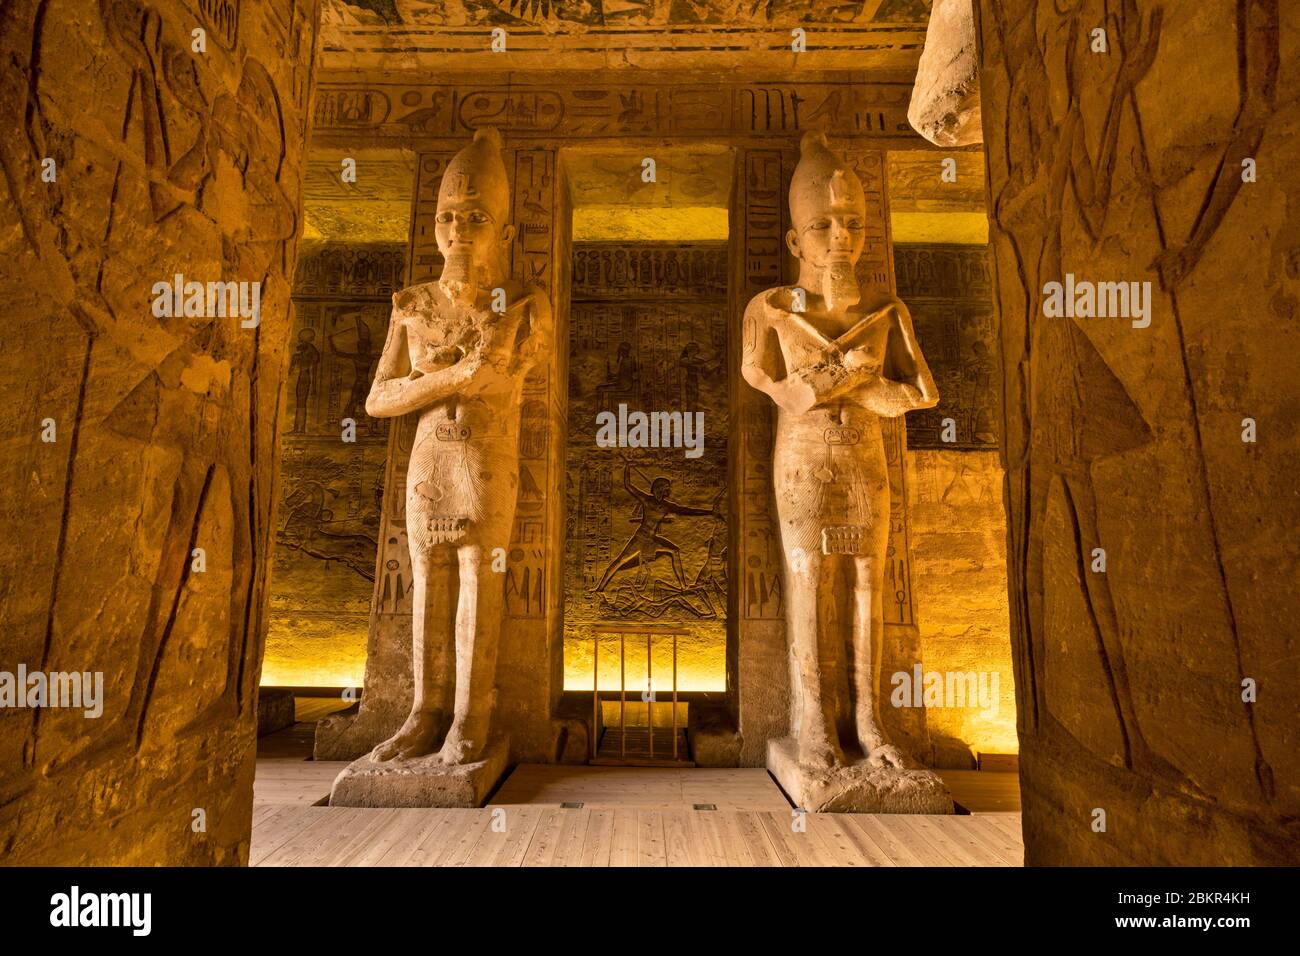 Ägypten, Oberägypten, Nubien, Abu Simbel, UNESCO-Weltkulturerbe, Tempel von Ramses II, Osirian Säulen mit dem Bild von Ramses II Unterstützung der pronaos (Hypotypische Halle) Stockfoto